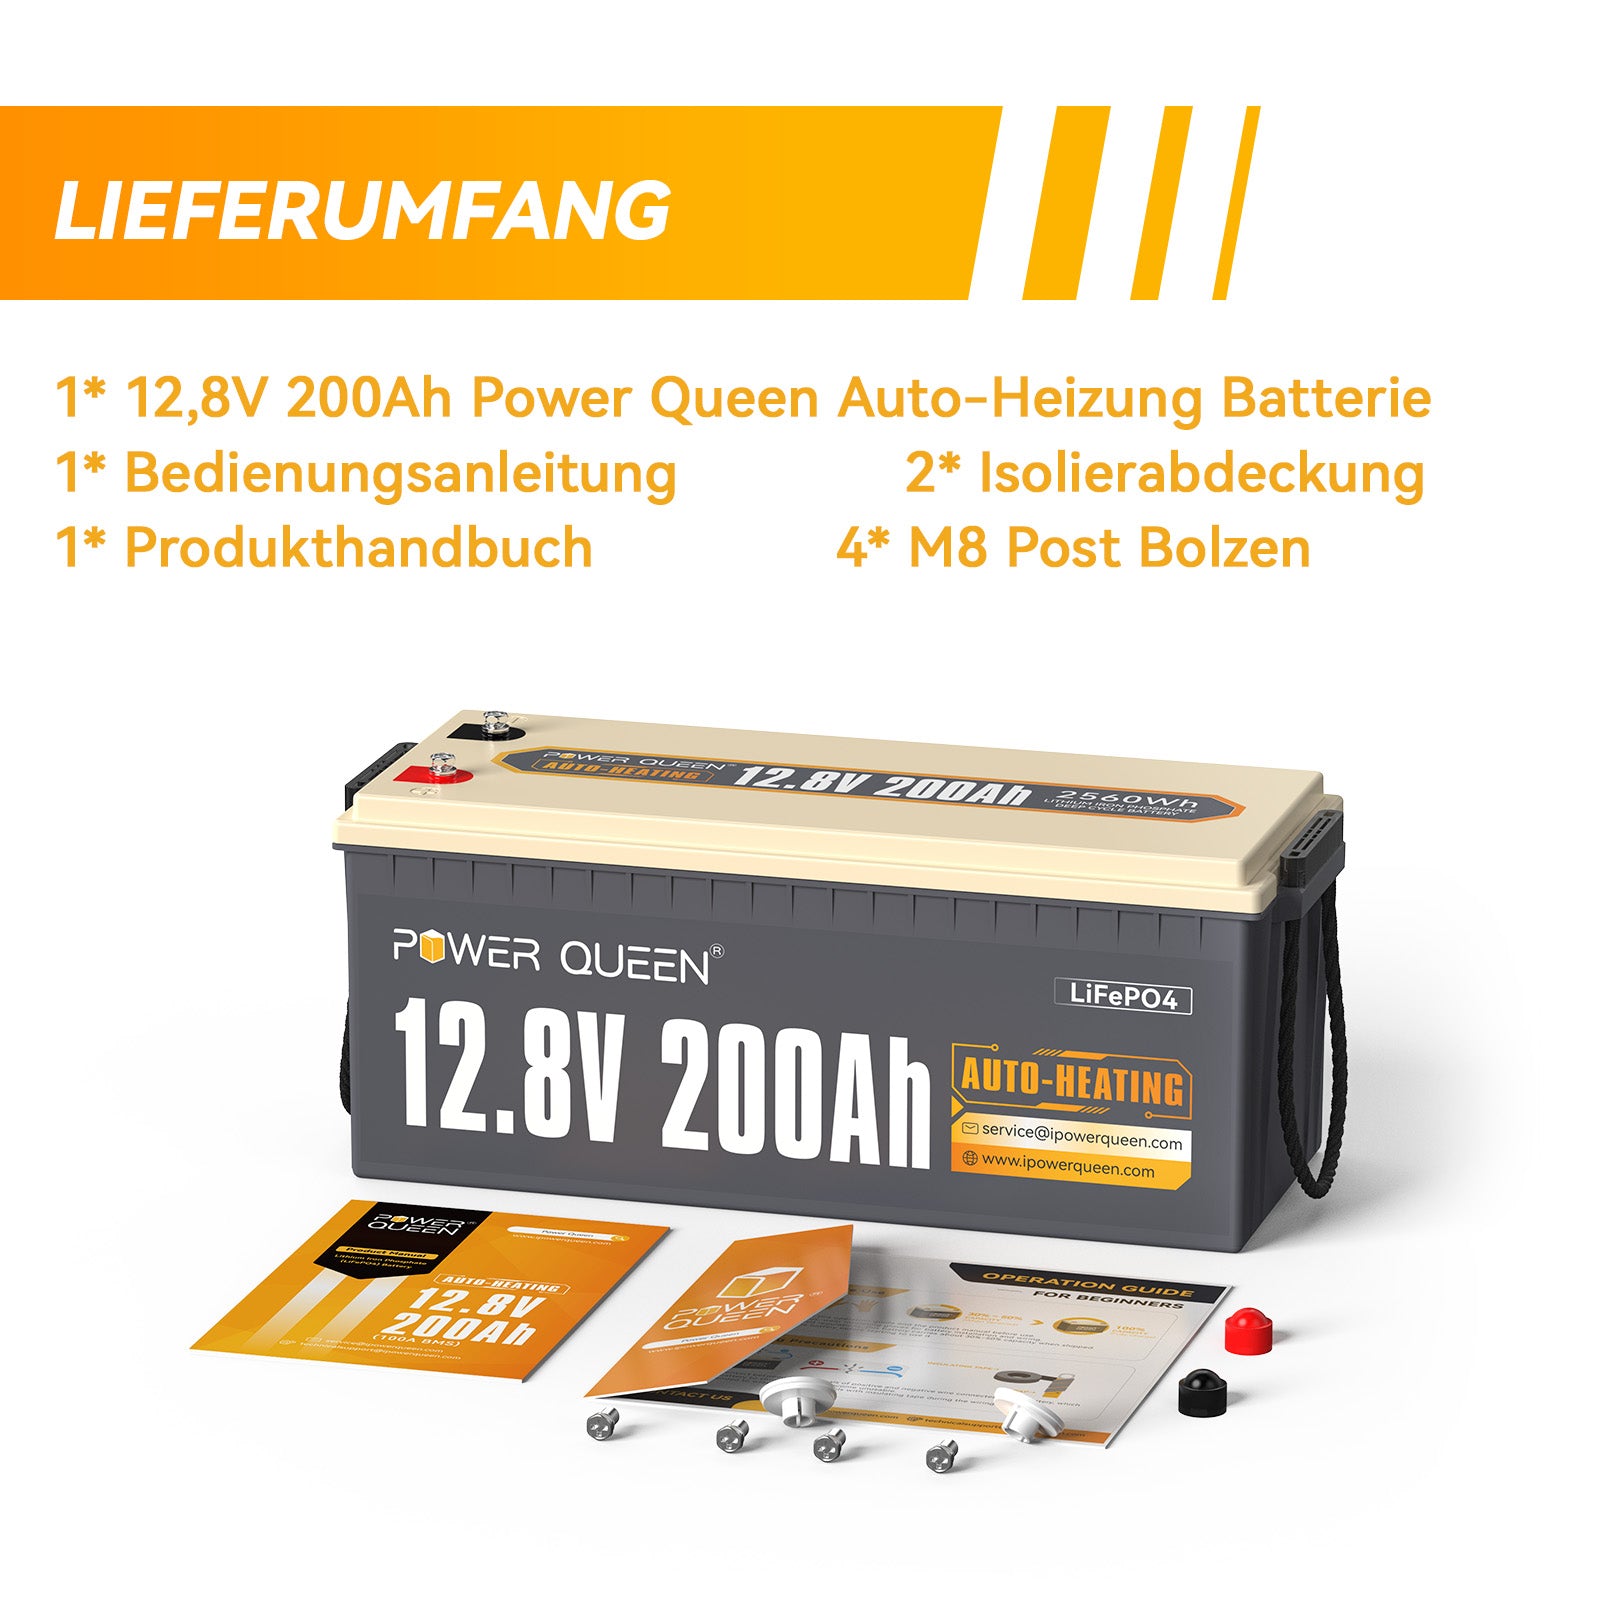 【0% IVA】Batería LiFePO4 autocalentable Power Queen de 12,8 V y 200 Ah, BMS integrado de 100 A